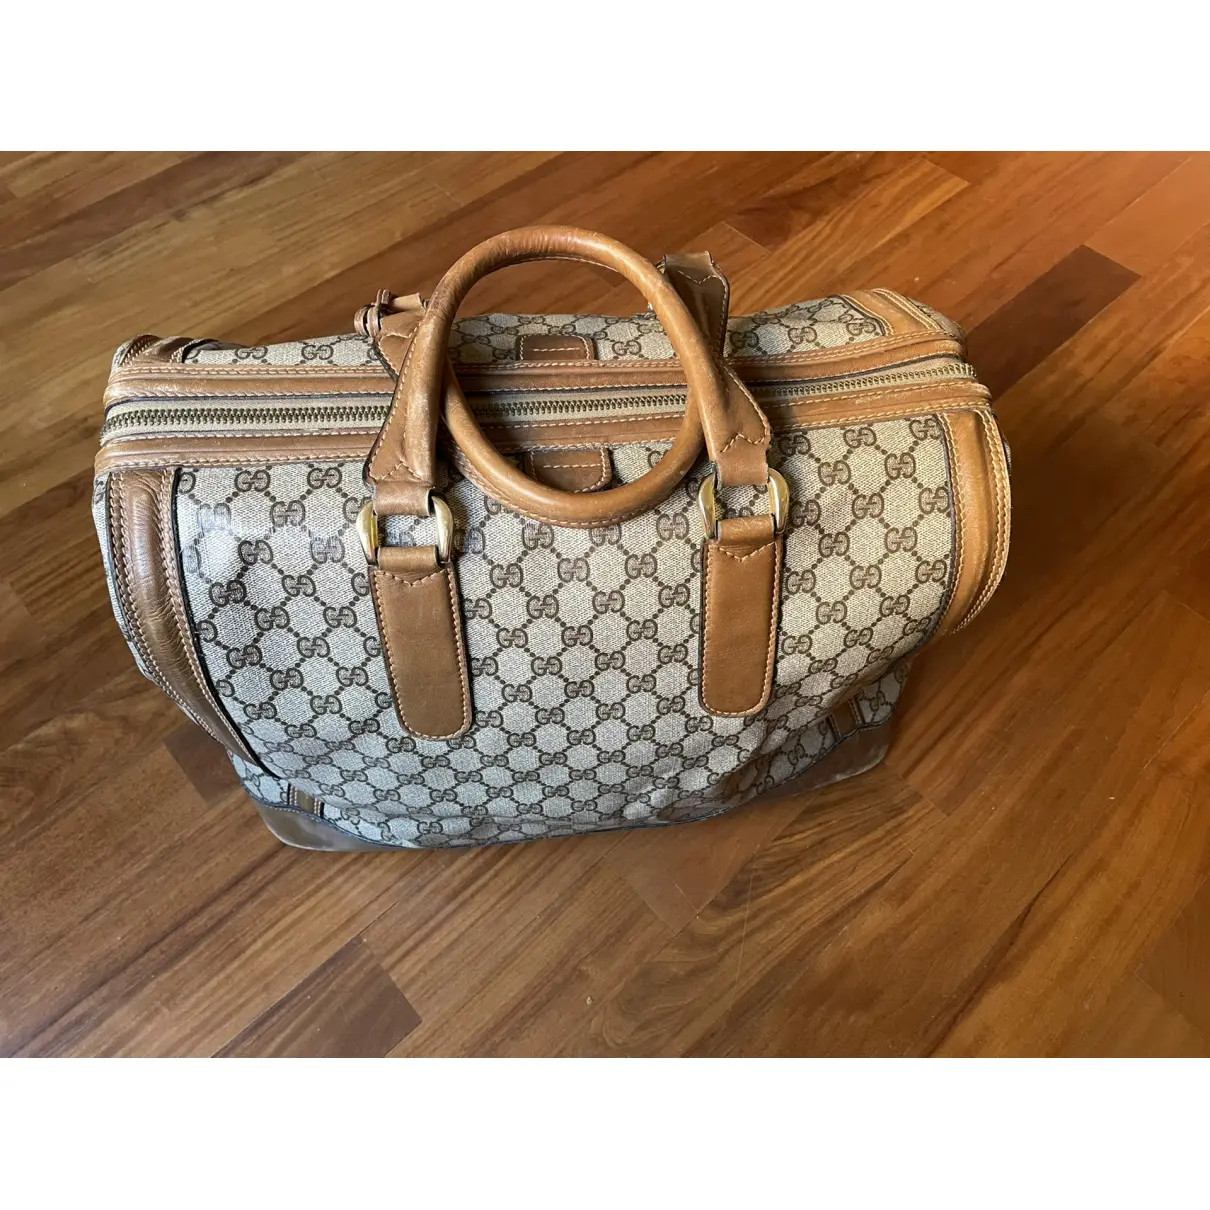 Buy Gucci Joy cloth handbag online